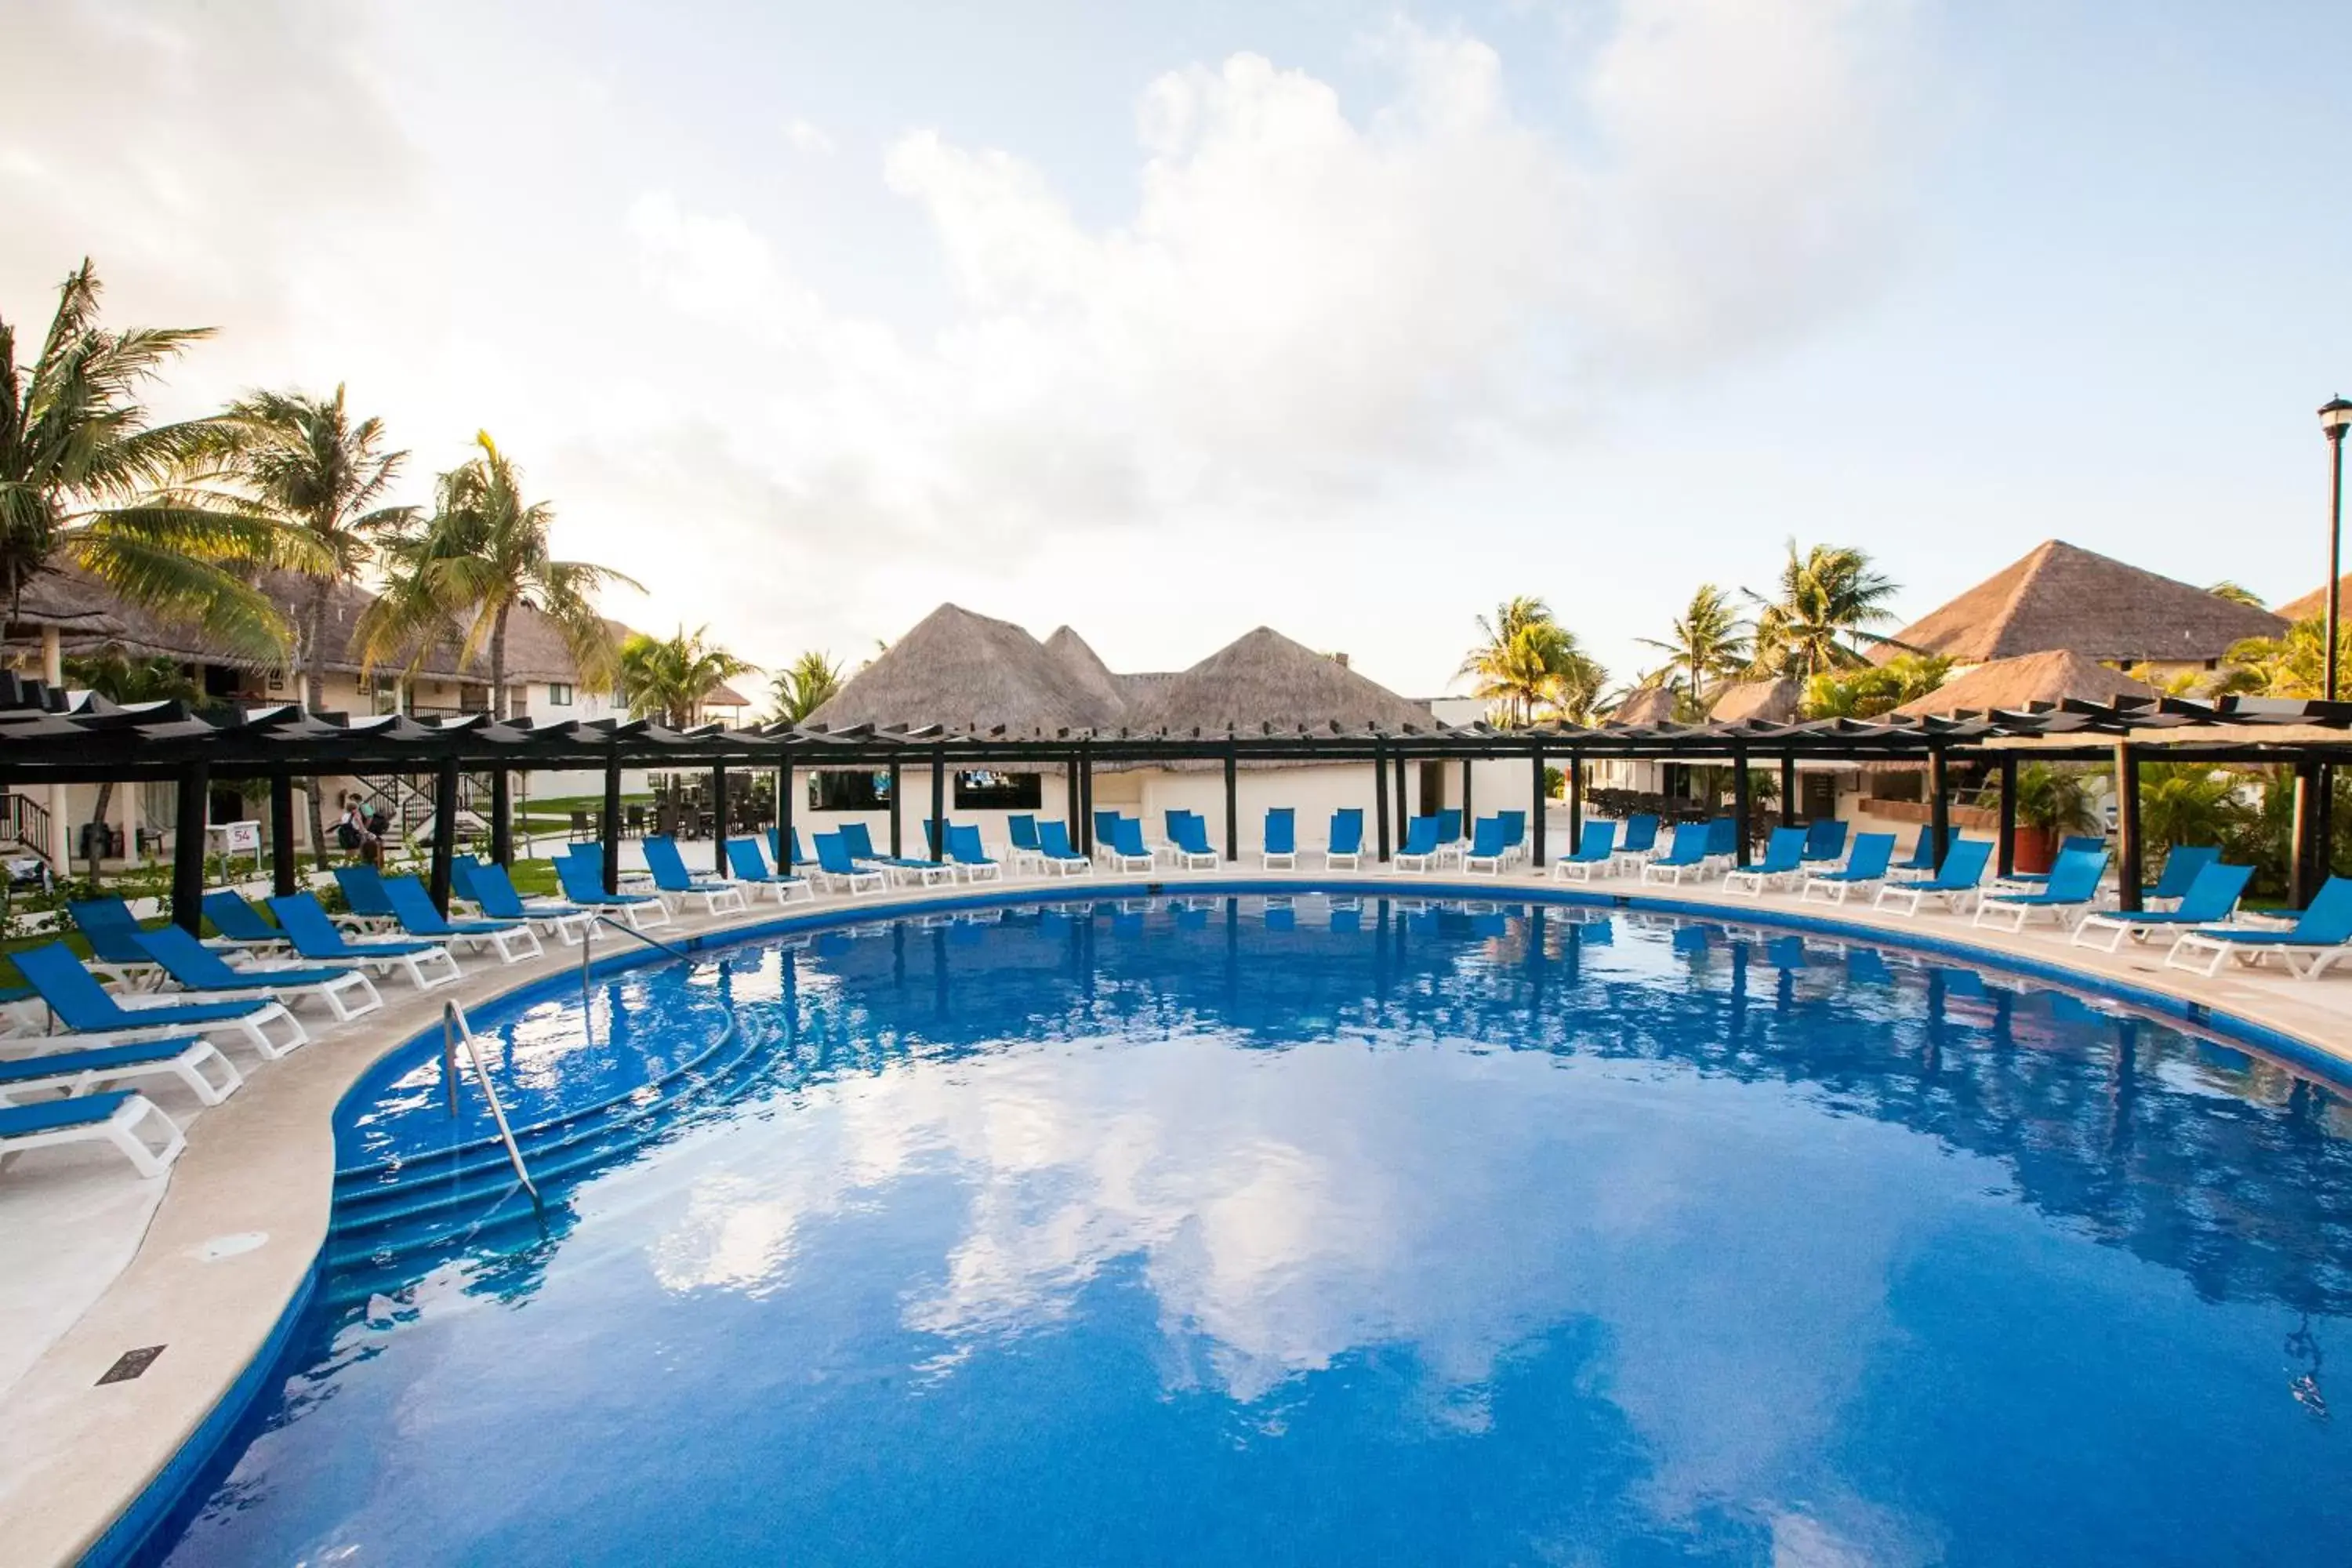 Swimming Pool in Allegro Playacar - All Inclusive Resort